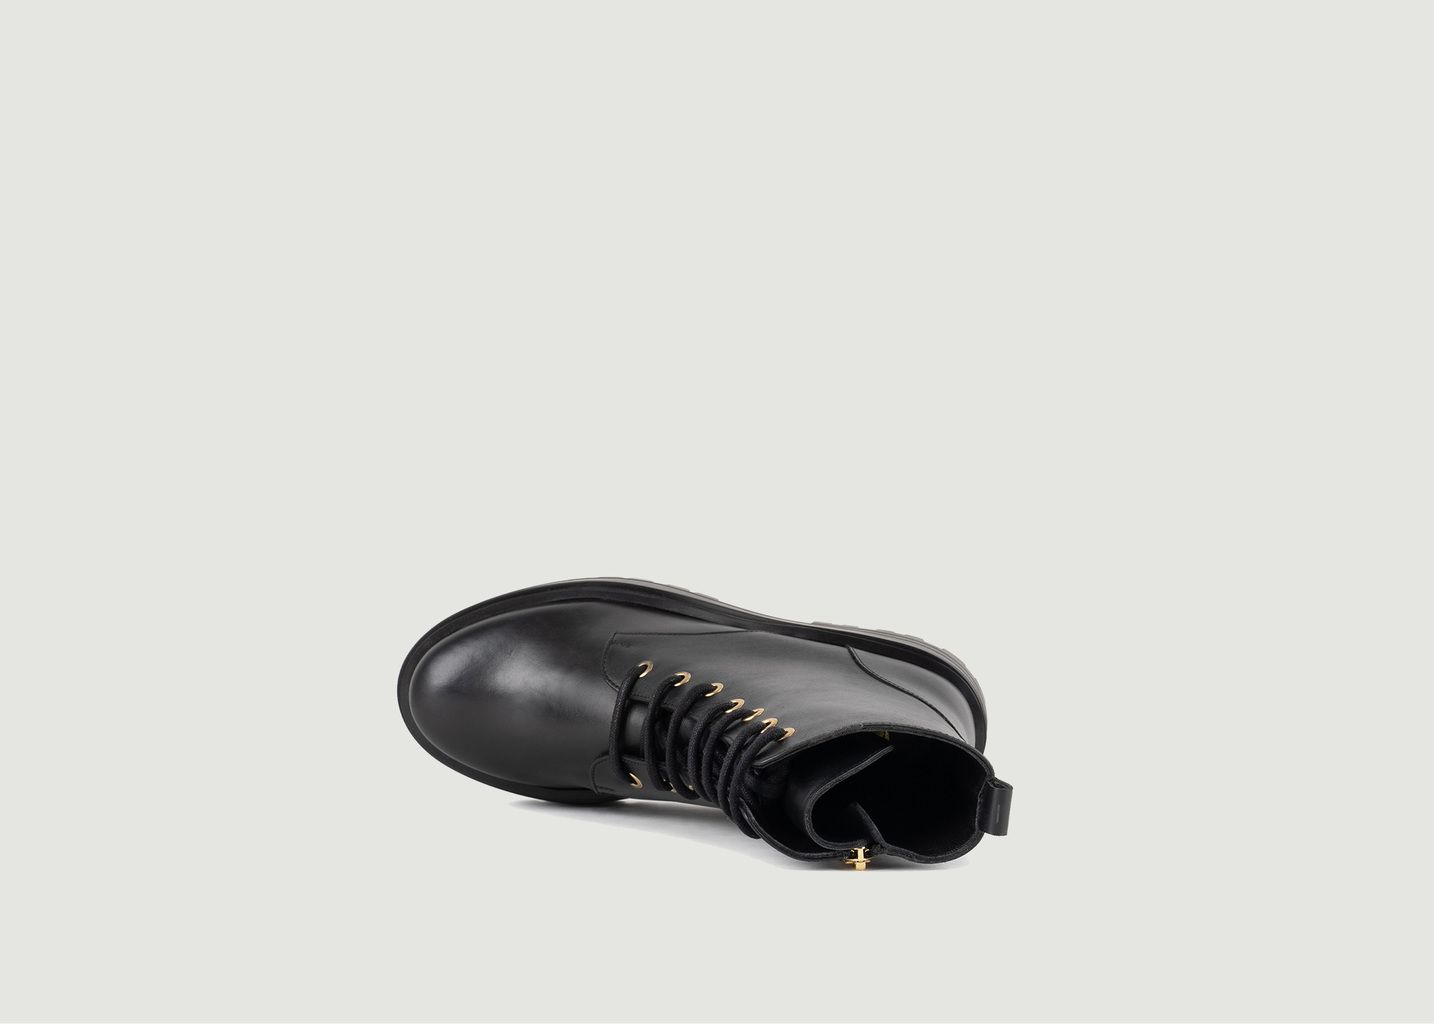 Maxime leather boots - Bobbies Paris